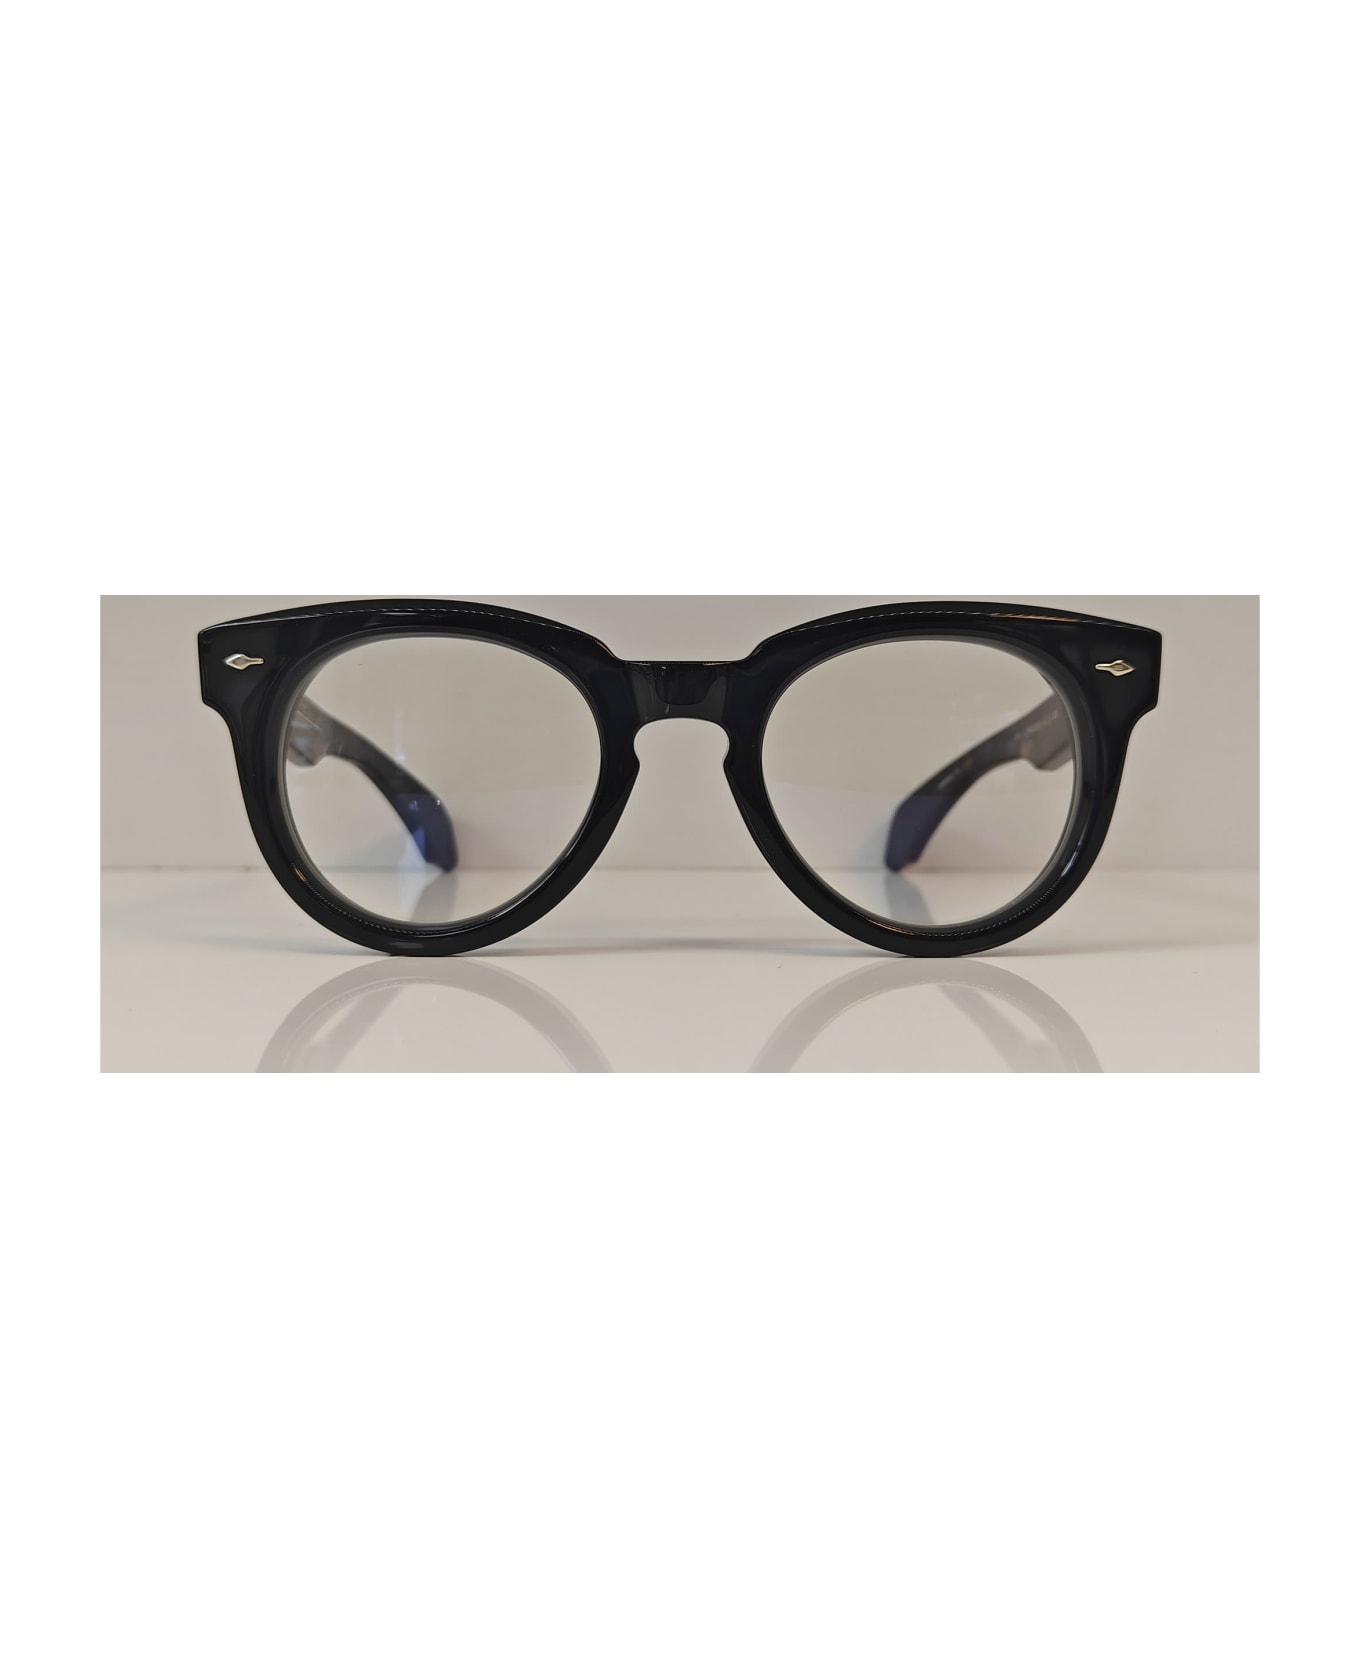 Jacques Marie Mage Fontainebleau 2 - Noir 7 Rx Glasses - black/silver